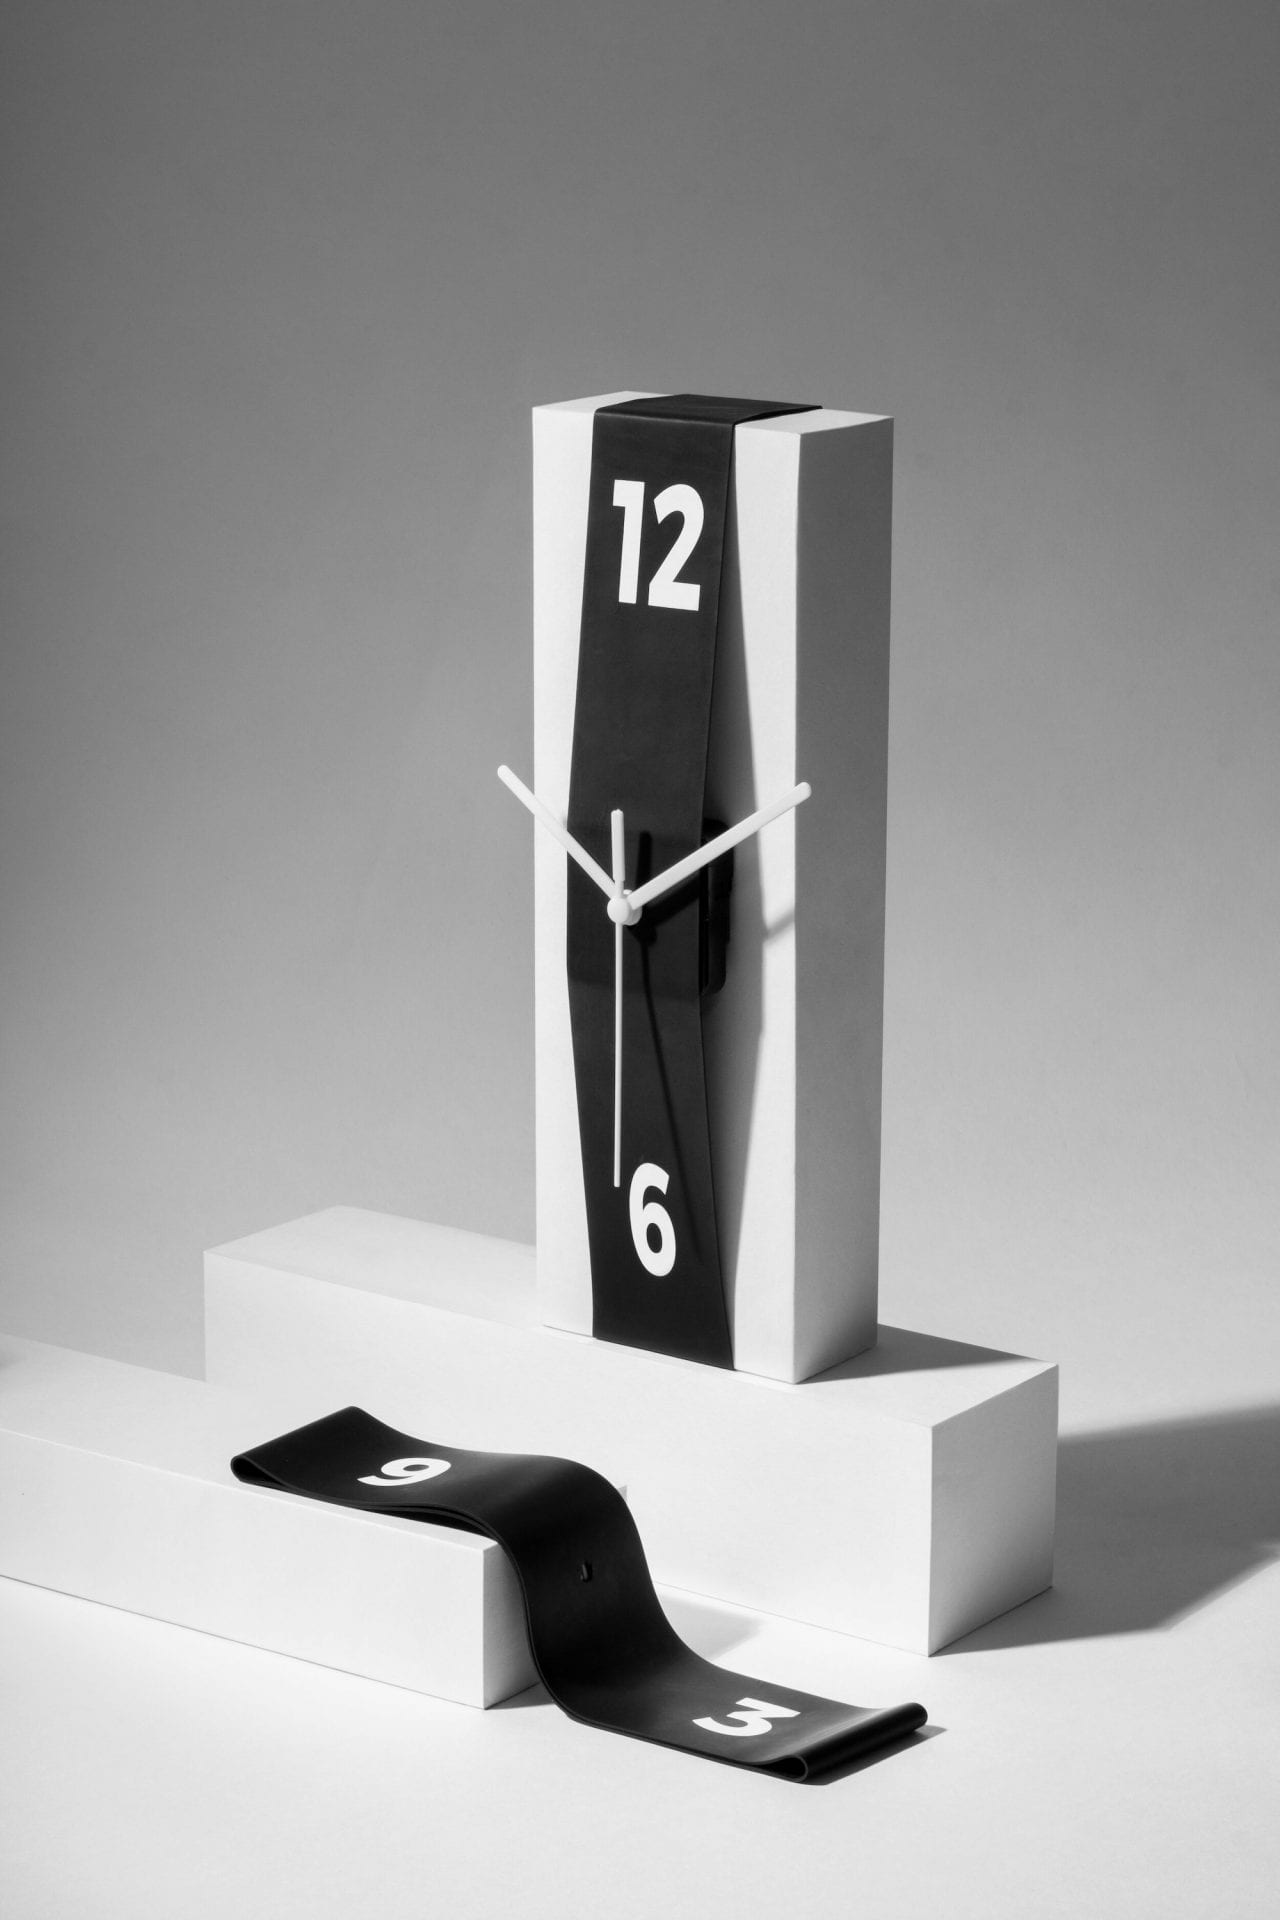 Stretch Clock : un ruban élastique pour transformer n'importe quel objet en horloge